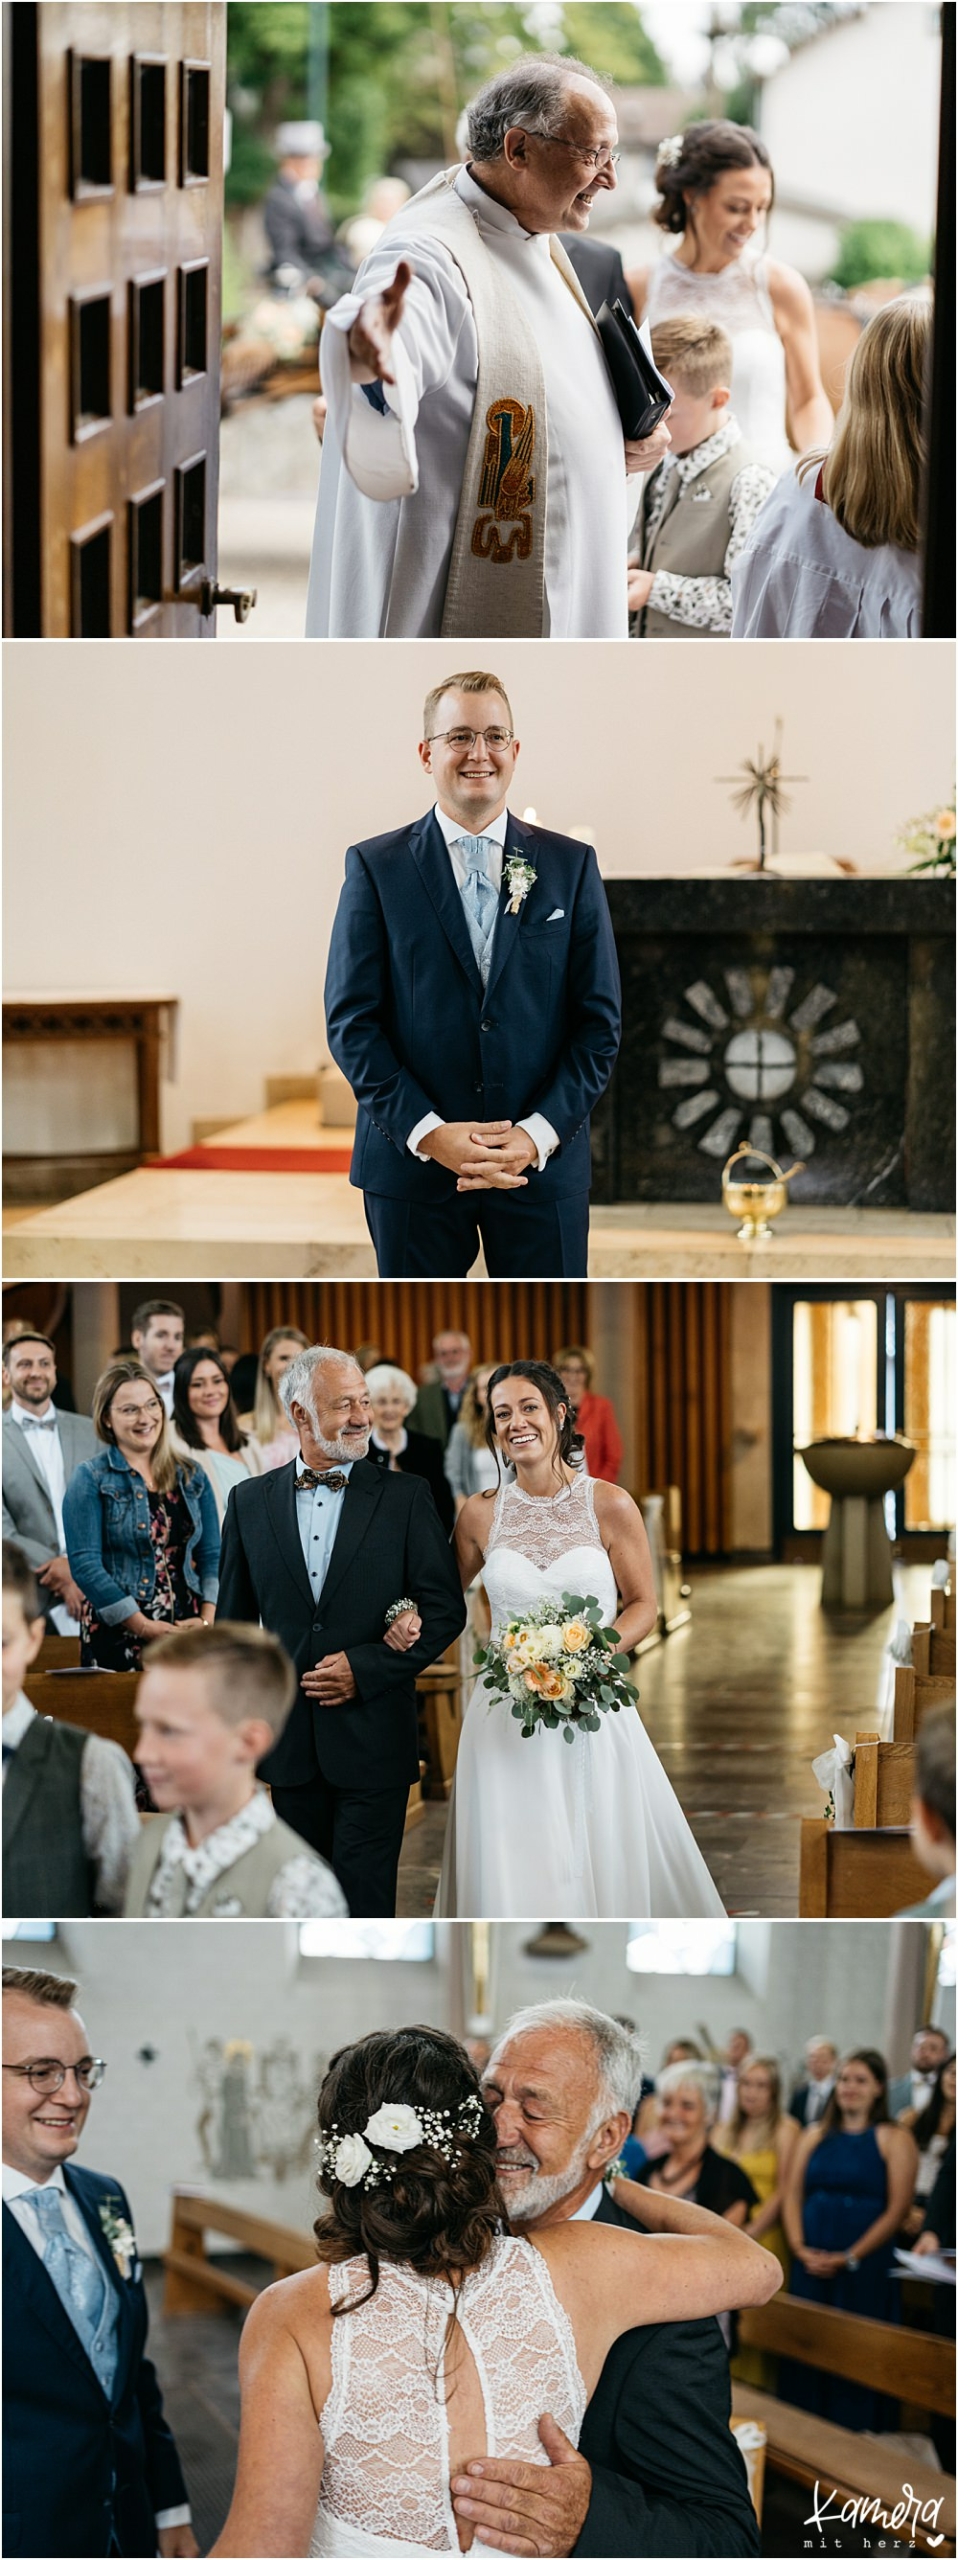 Einzug der Braut in die Kirche